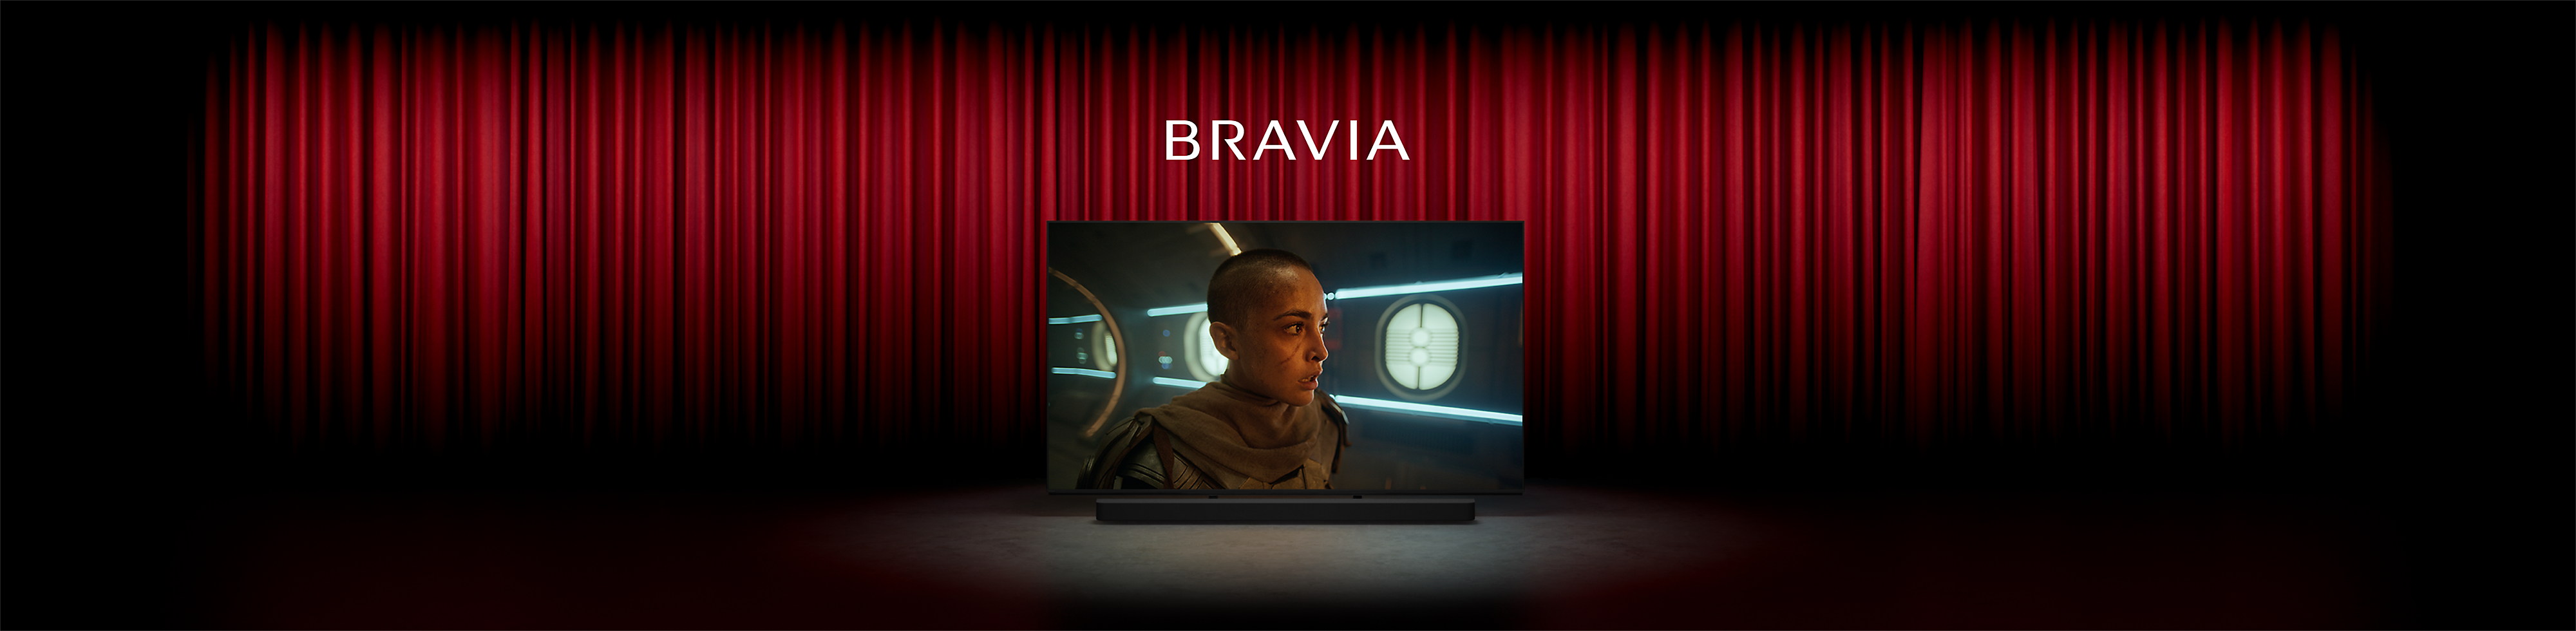 תמונה של קולנוע עם וילונות אדומים ובמה מרכזית שבה טלוויזיה של Sony, עם צילום מסך של אדם בסרט מדע בדיוני, המילה BRAVIA למעלה ומקרן קול של Sony למטה